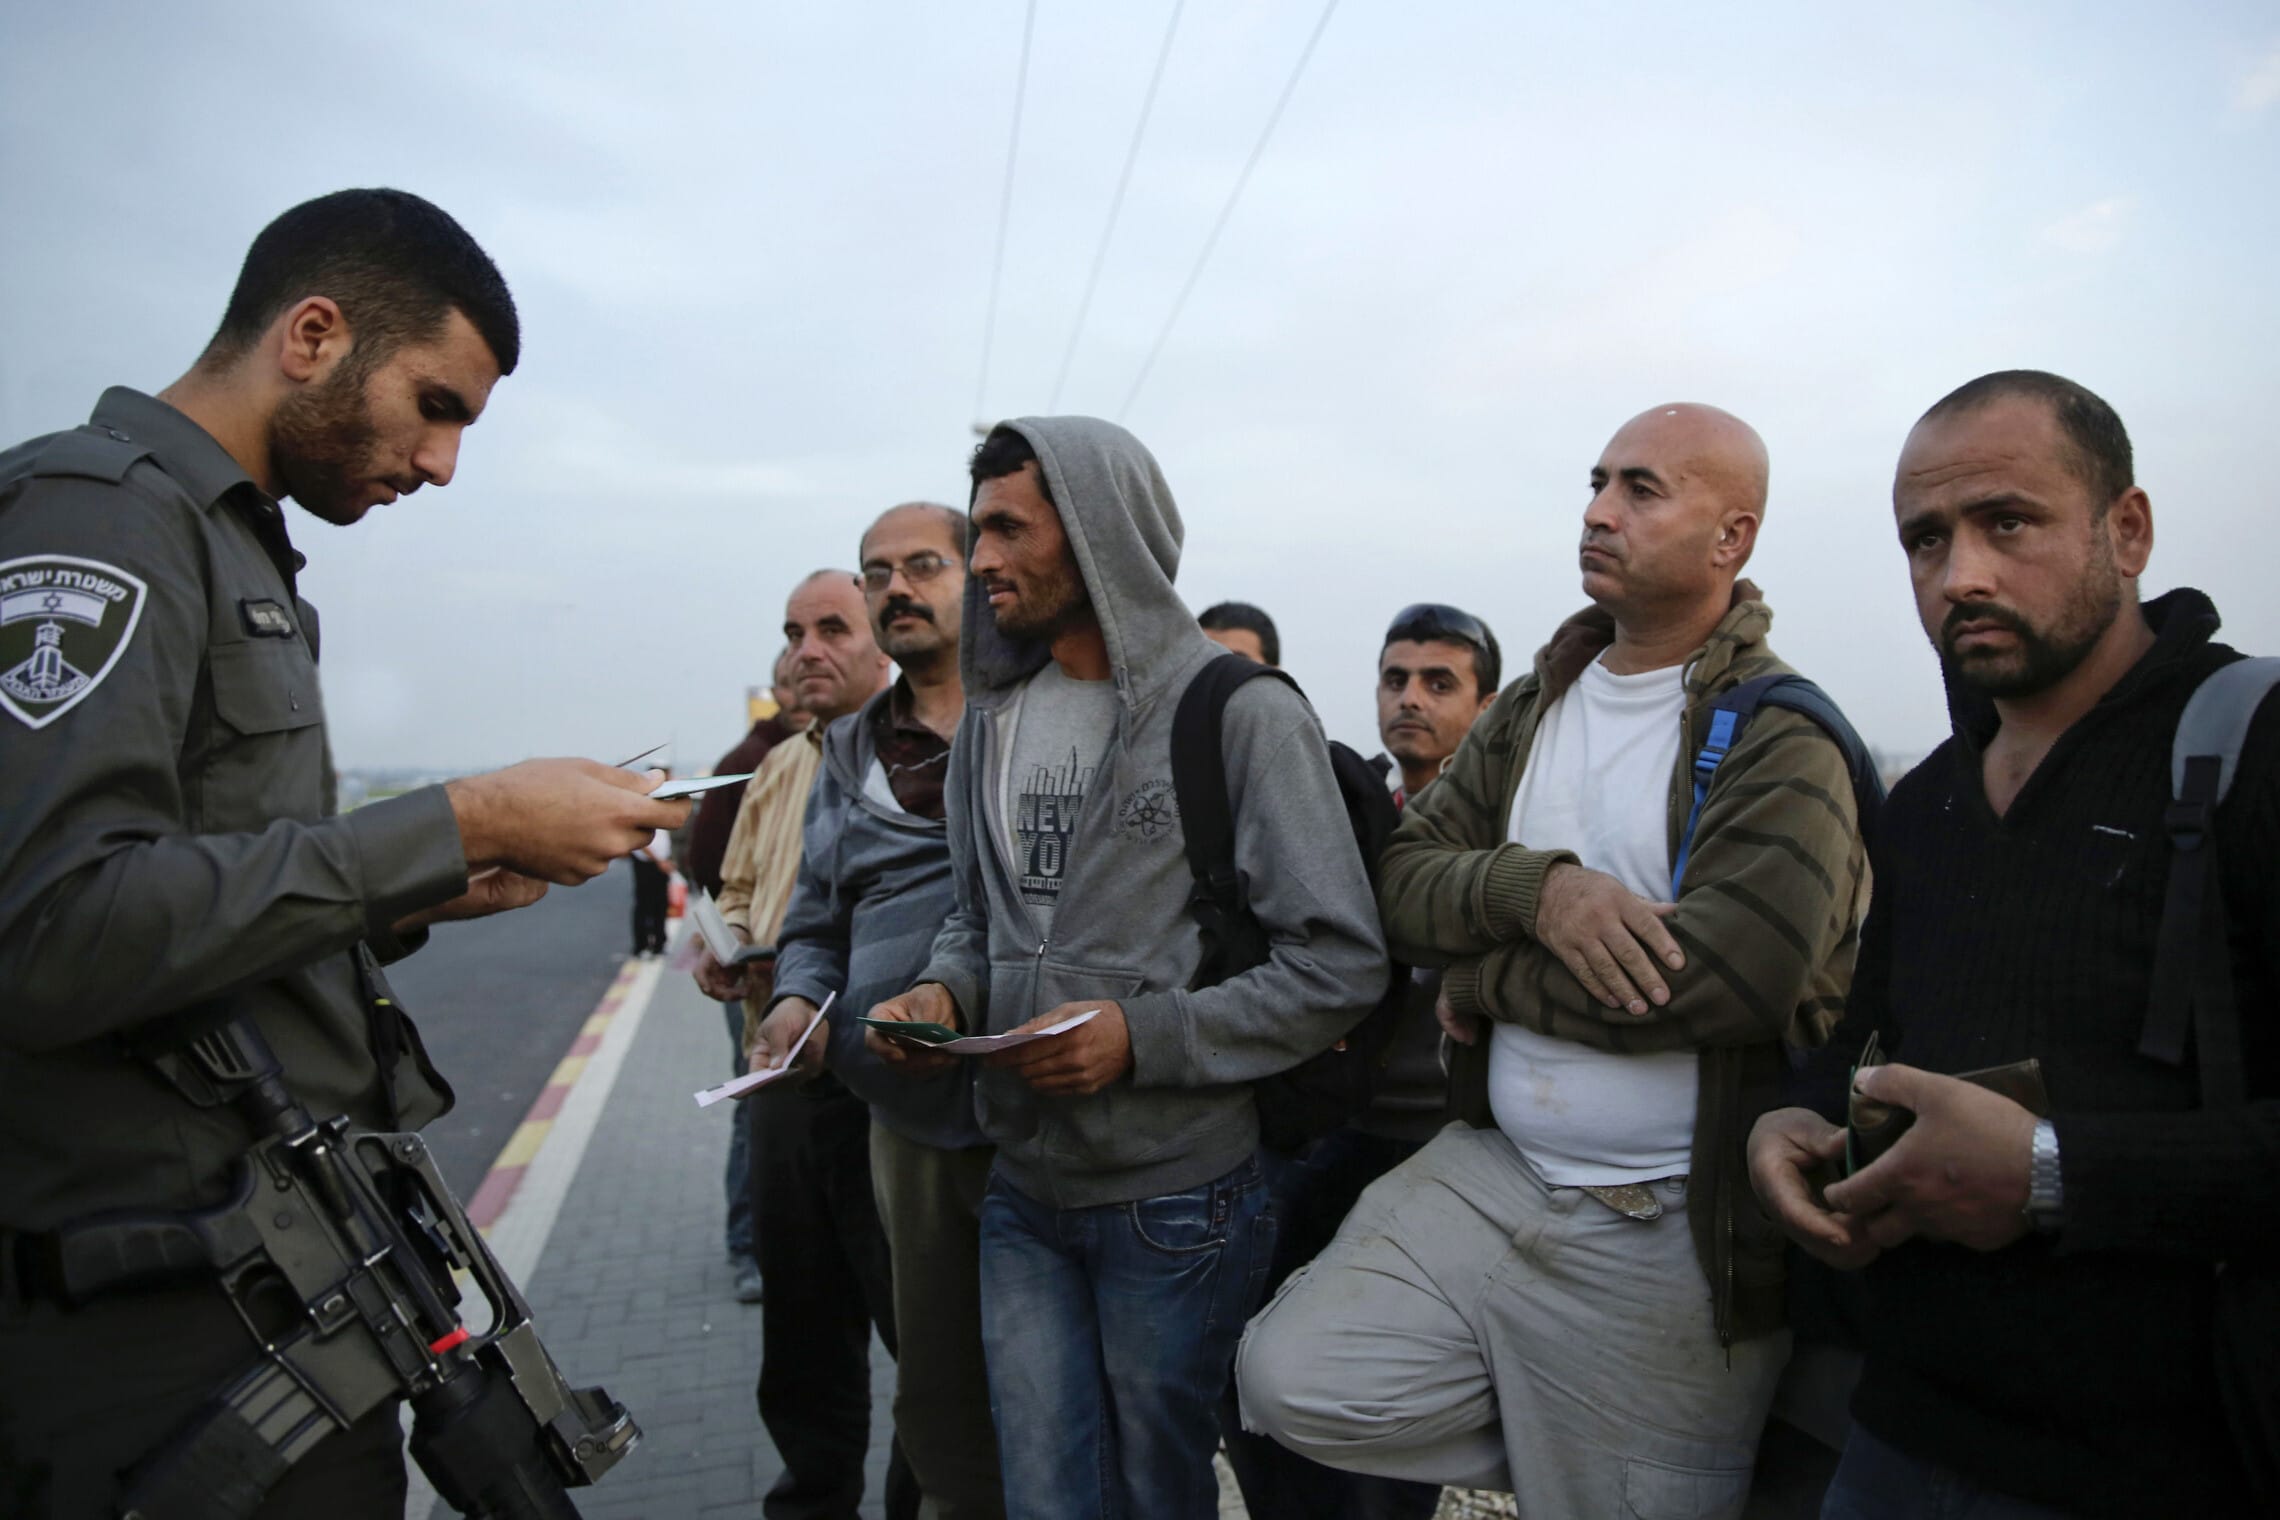 שוטר משמר הגבול בודק את התעודות של עובדים פלסטינים באזור אשקלון,2014 (צילום: AP Photo/Tsafrir Abayov)